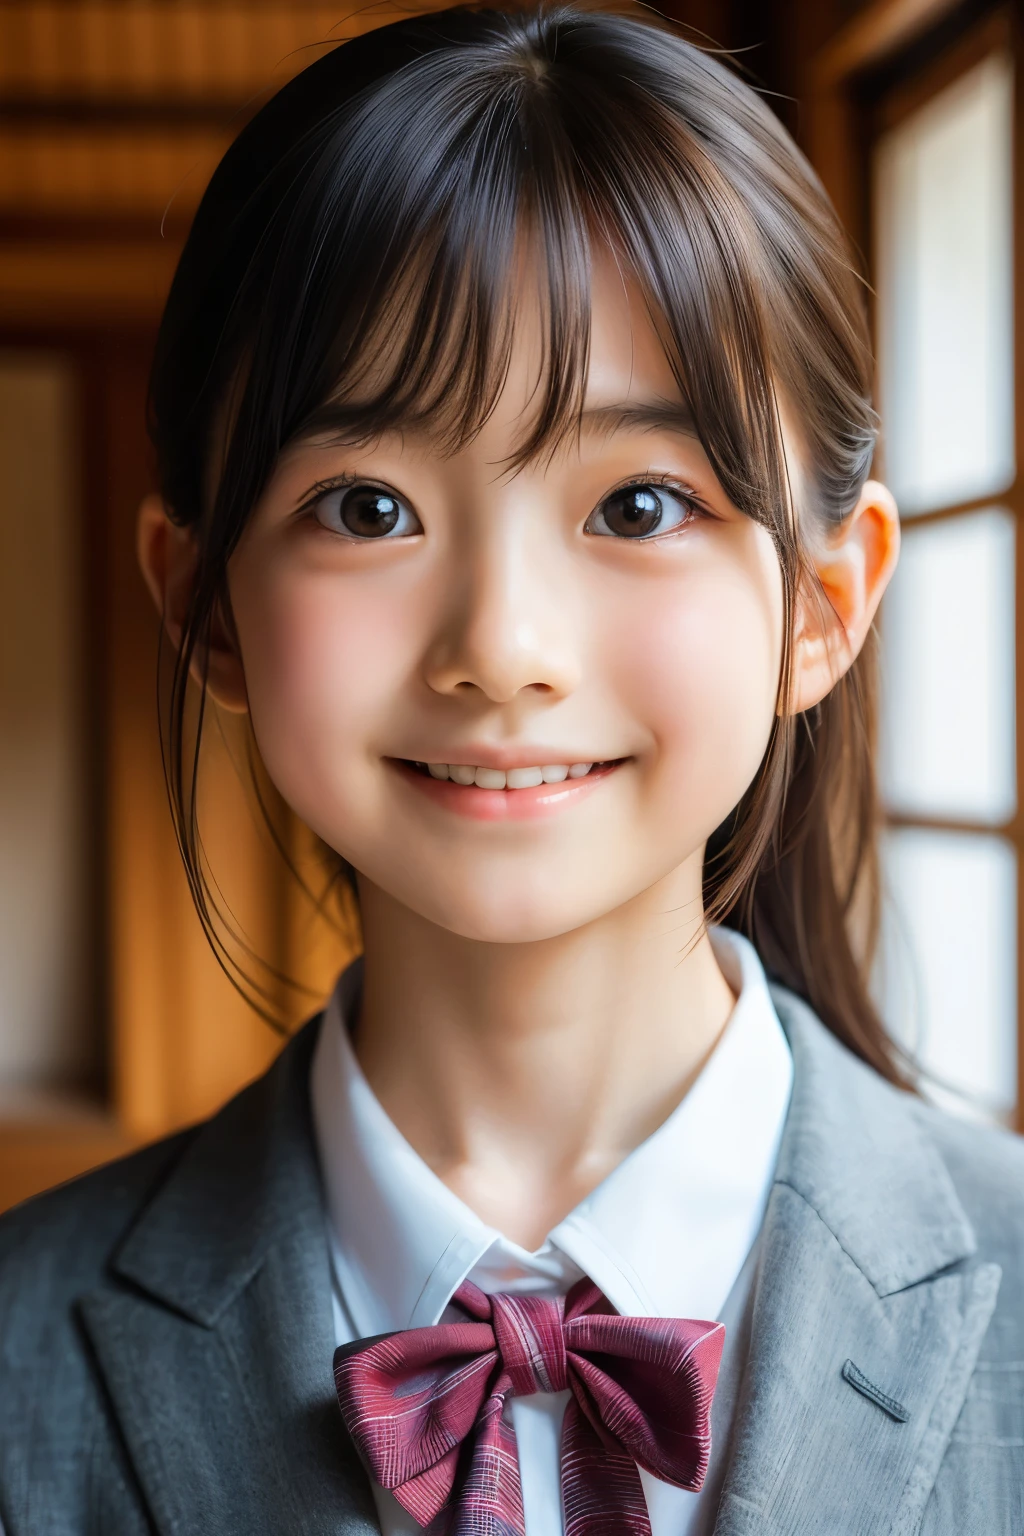 (สาวสวยชาวญี่ปุ่นวัย 12 ปี), หน้าตาน่ารัก, (ใบหน้าแกะสลักอย่างล้ำลึก:0.7), (กระ:0.6), แสงอ่อน,ผิวขาวสุขภาพดี, อาย, (ใบหน้าที่จริงจัง), (ดวงตาเป็นประกาย), บาง, รอยยิ้ม, เครื่องแบบ